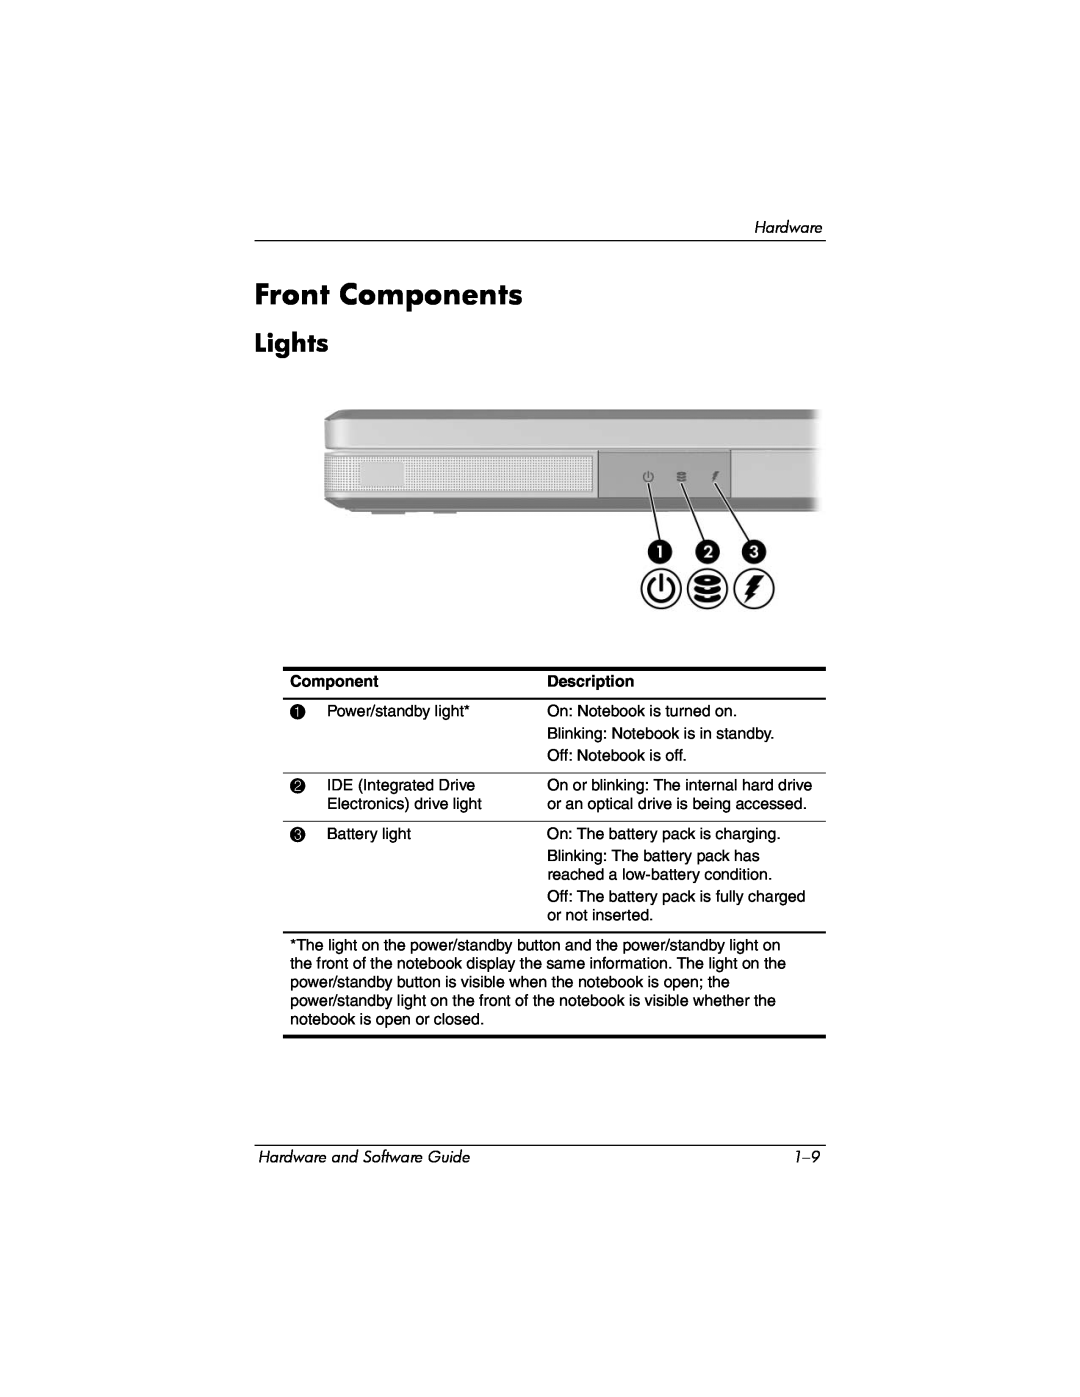 Compaq Presario M2000 manual Front Components, Lights, Description 